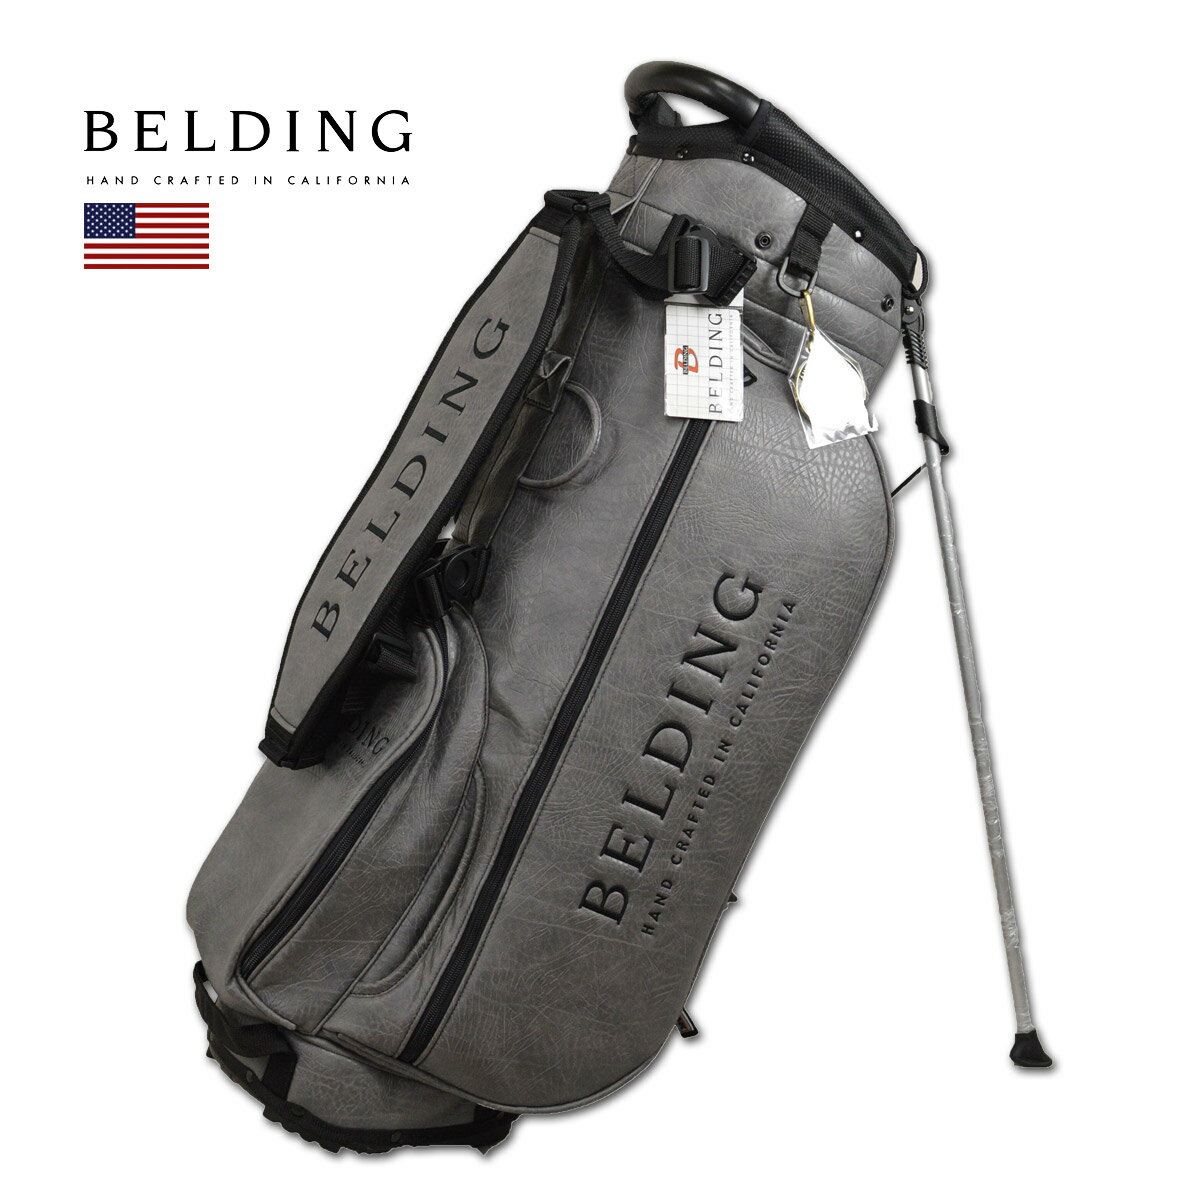 ゴルフ スタンドバッグをお探しの方のための専門サイト Belding キャディバッグ メンズ グレー スタンド式 Hbcb あす楽 送料無料 ベルディング ゴルフ スタンド 8 5インチ 5分割 サンバード 2 0 スタンドバッグ ゴルフバッグ キャディバック かっこいい